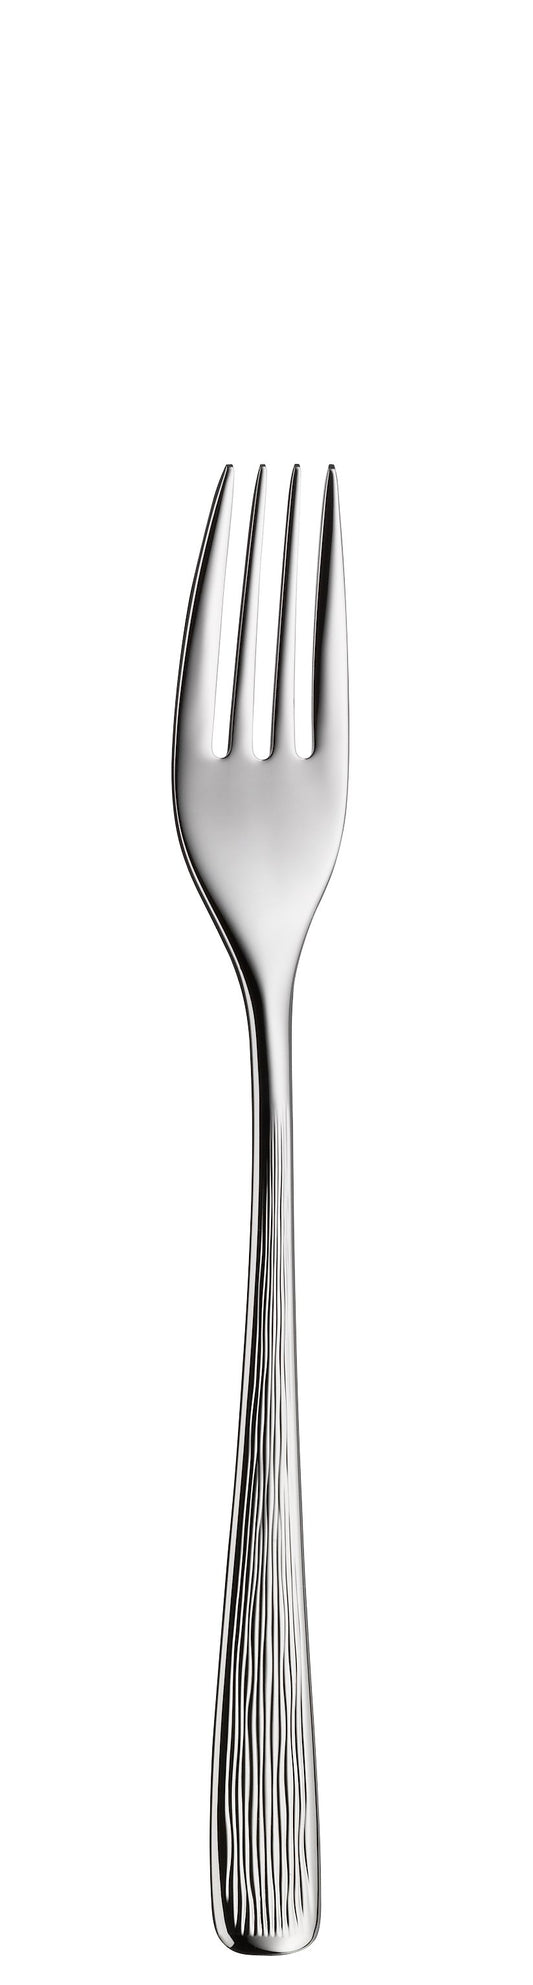 Dessert fork MESCANA 193mm